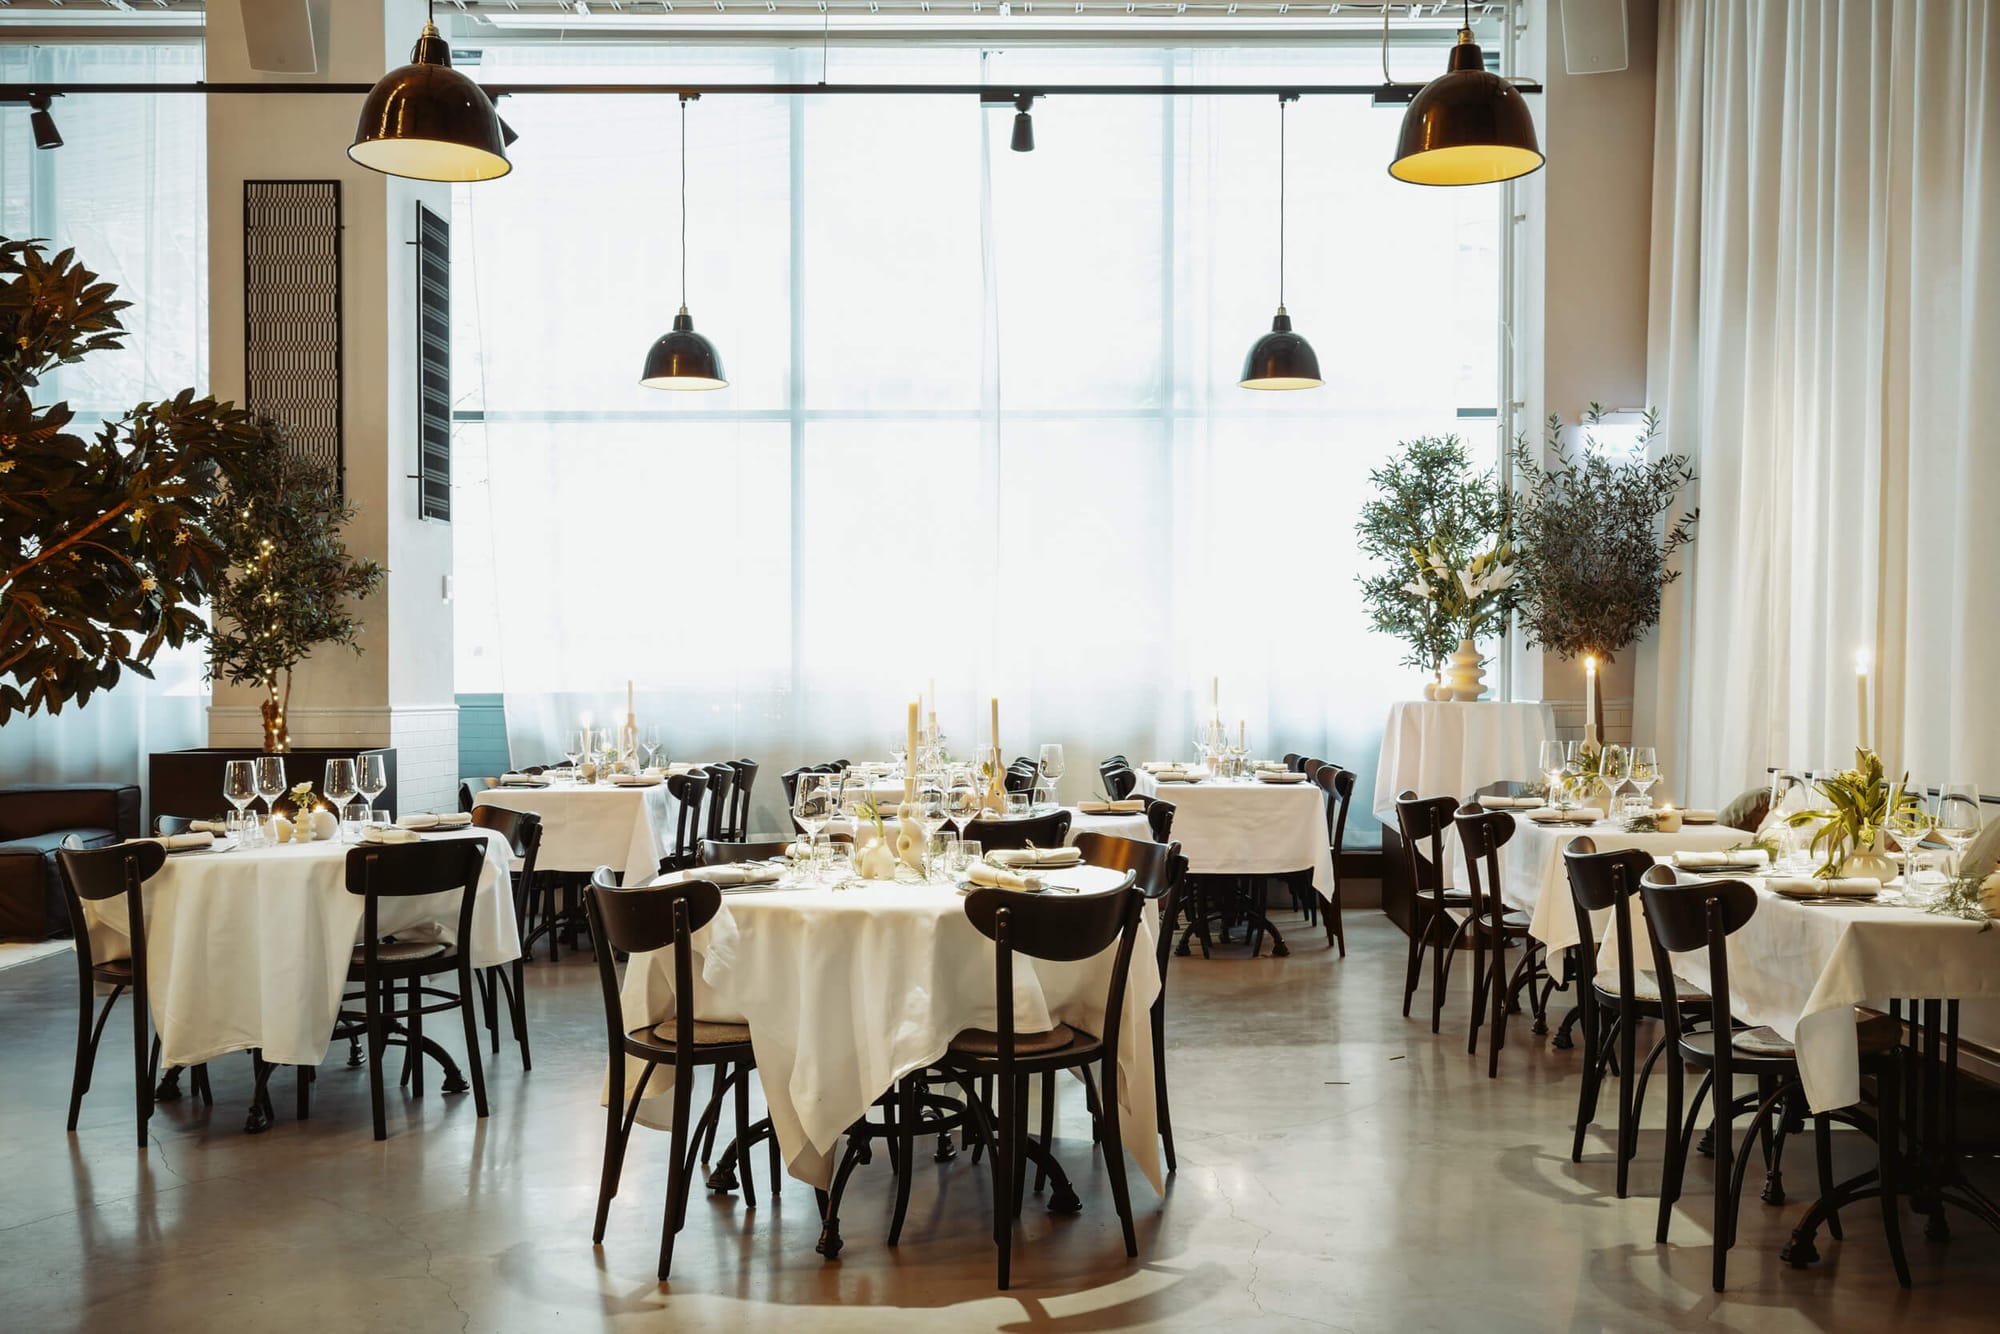 Vackre festlokalen Le Café passar perfekt för bröllop under vintertid